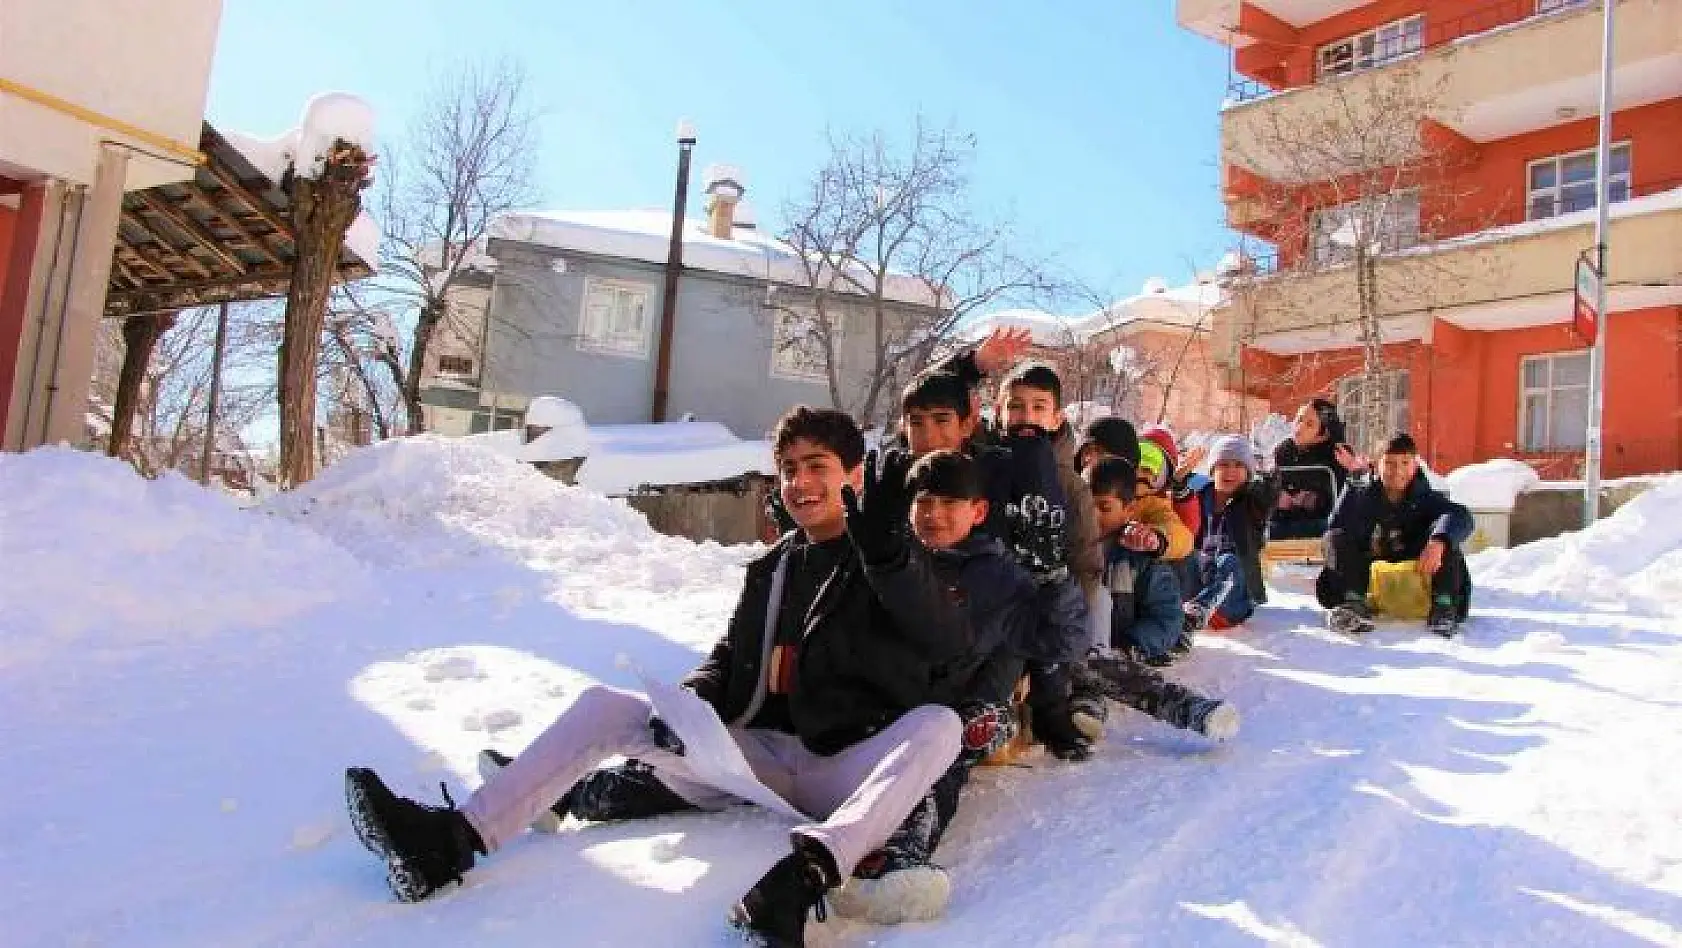 Bingöl'de 1 metreyi bulan kar çocuklara eğlence, vatandaşa çile oldu